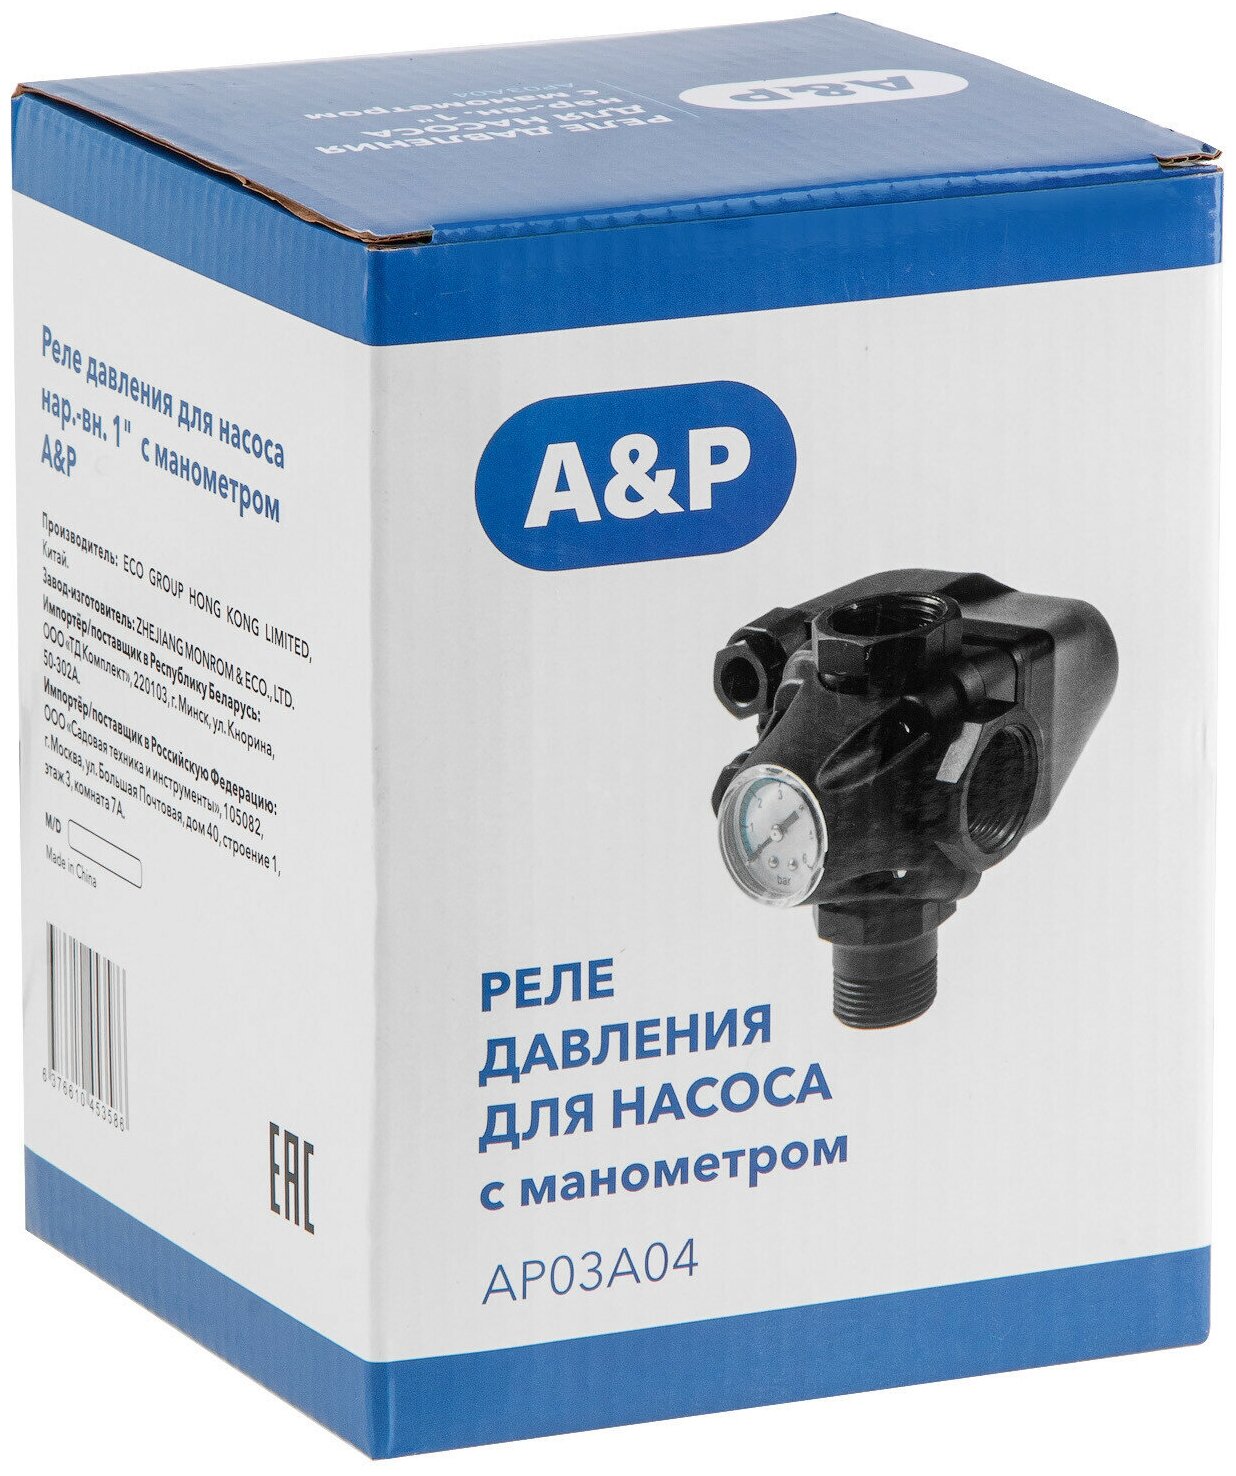 Реле давления для насоса с манометром A&P (AP03A04)